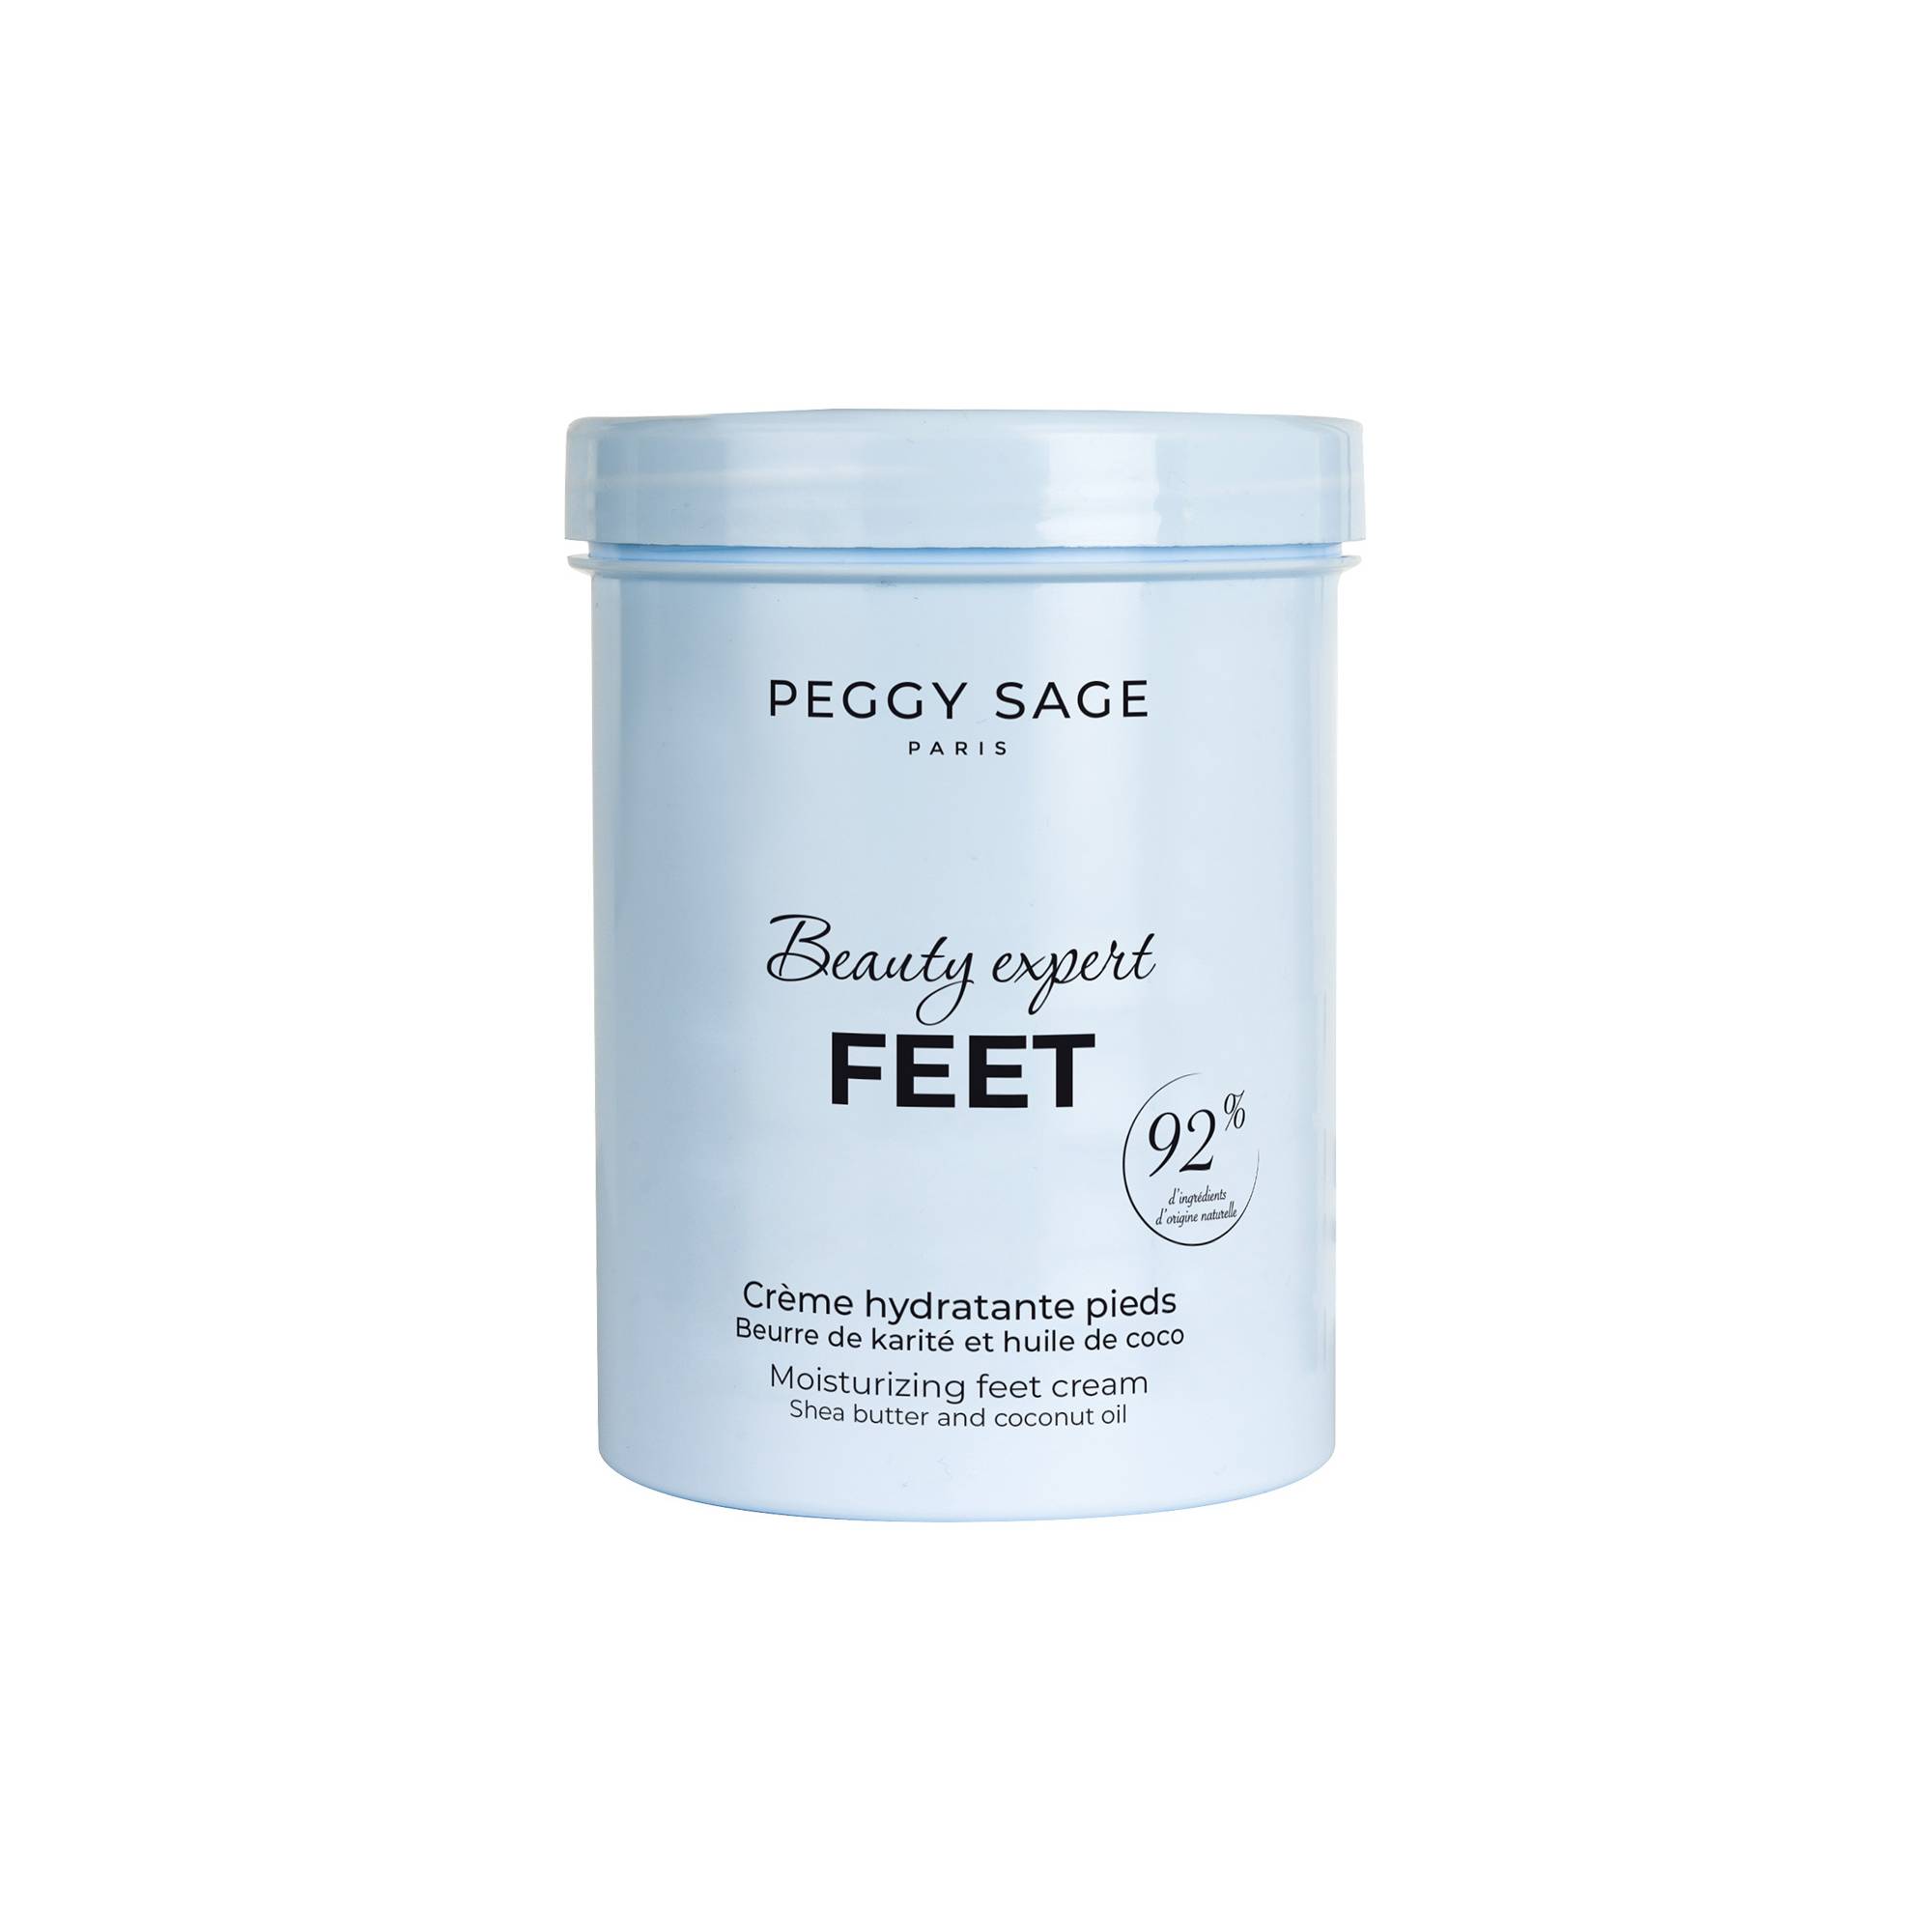 Crème hydratante pieds Beauty expert Feet de la marque Peggy Sage Contenance 270ml - 1